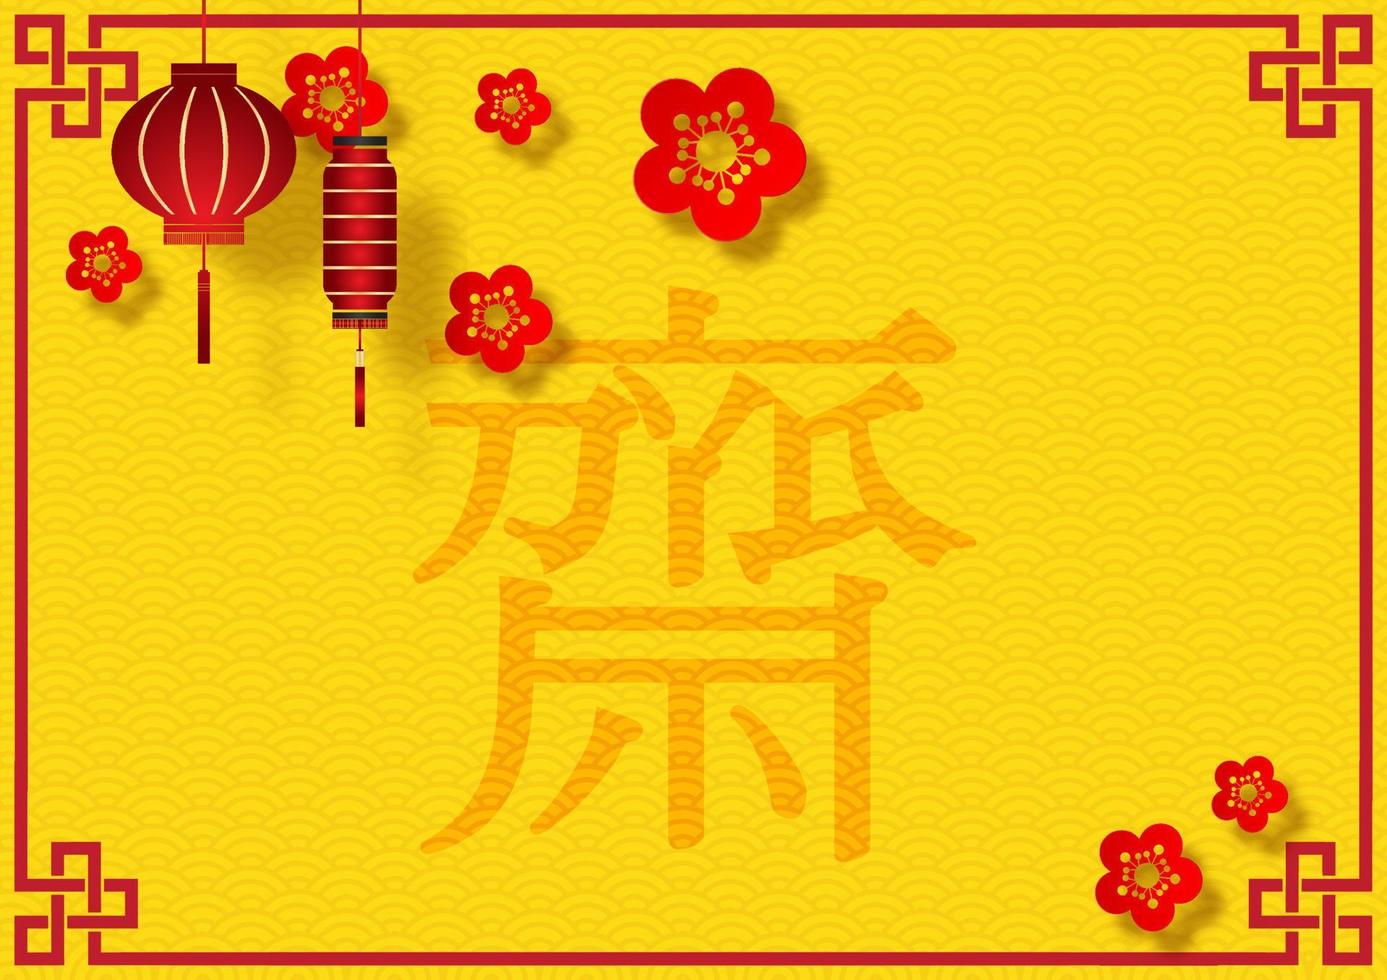 lanternes chinoises avec coin décoration et fleur de prunier rouge grande sur lettres chinoises rouges et motif de vague avec fond jaune. la lettre chinoise rouge signifie jeûner pour adorer bouddha en anglais. vecteur